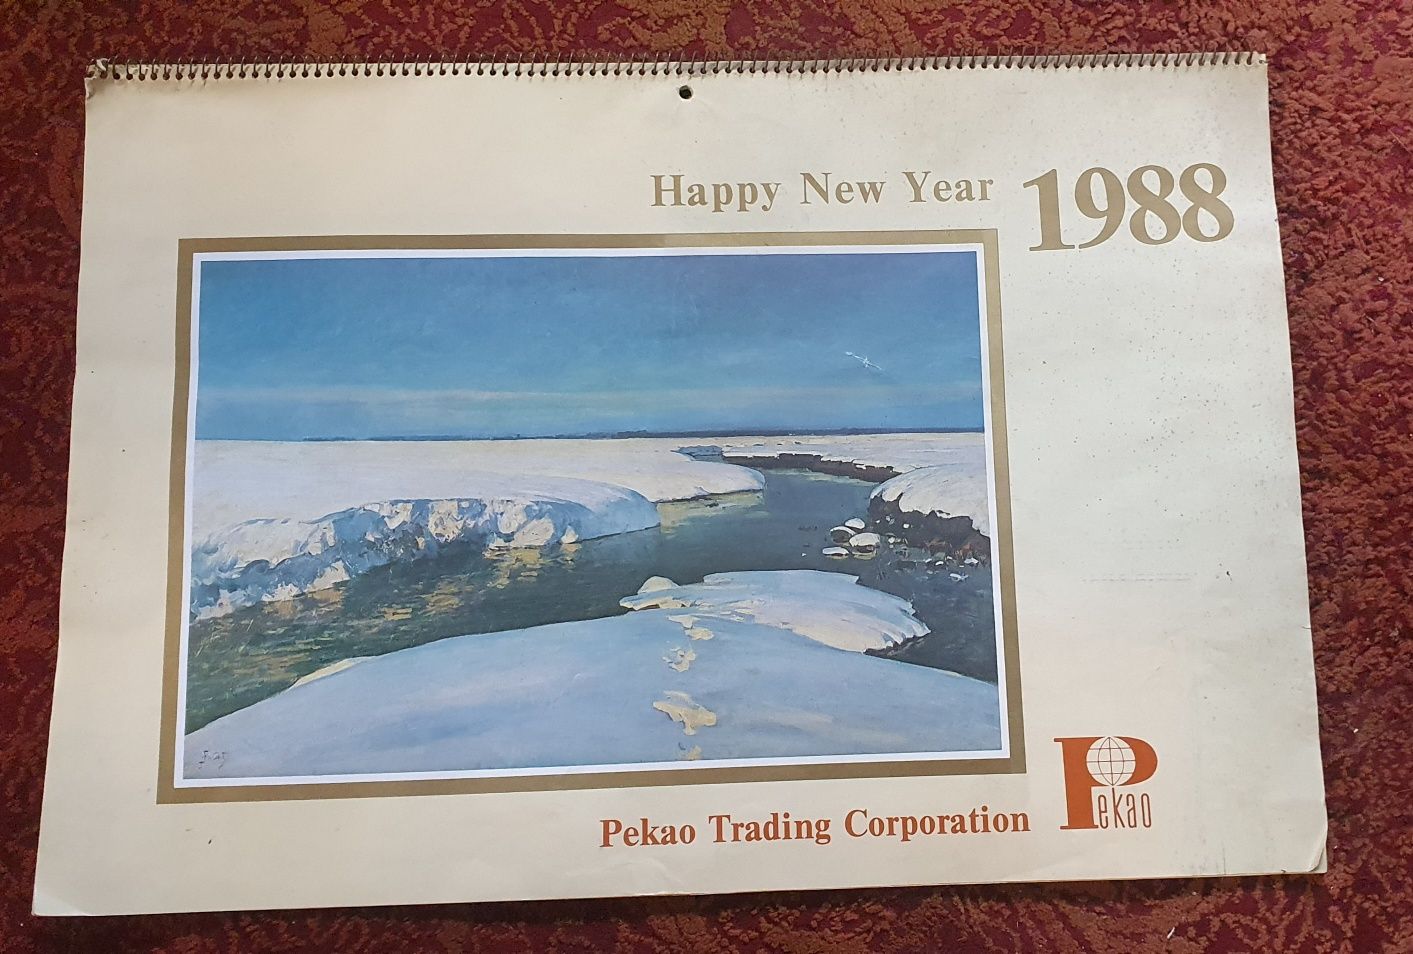 Sprzedam kompletny kalendarz ścienny wieloplanszowy PKOBP SA 1988 r